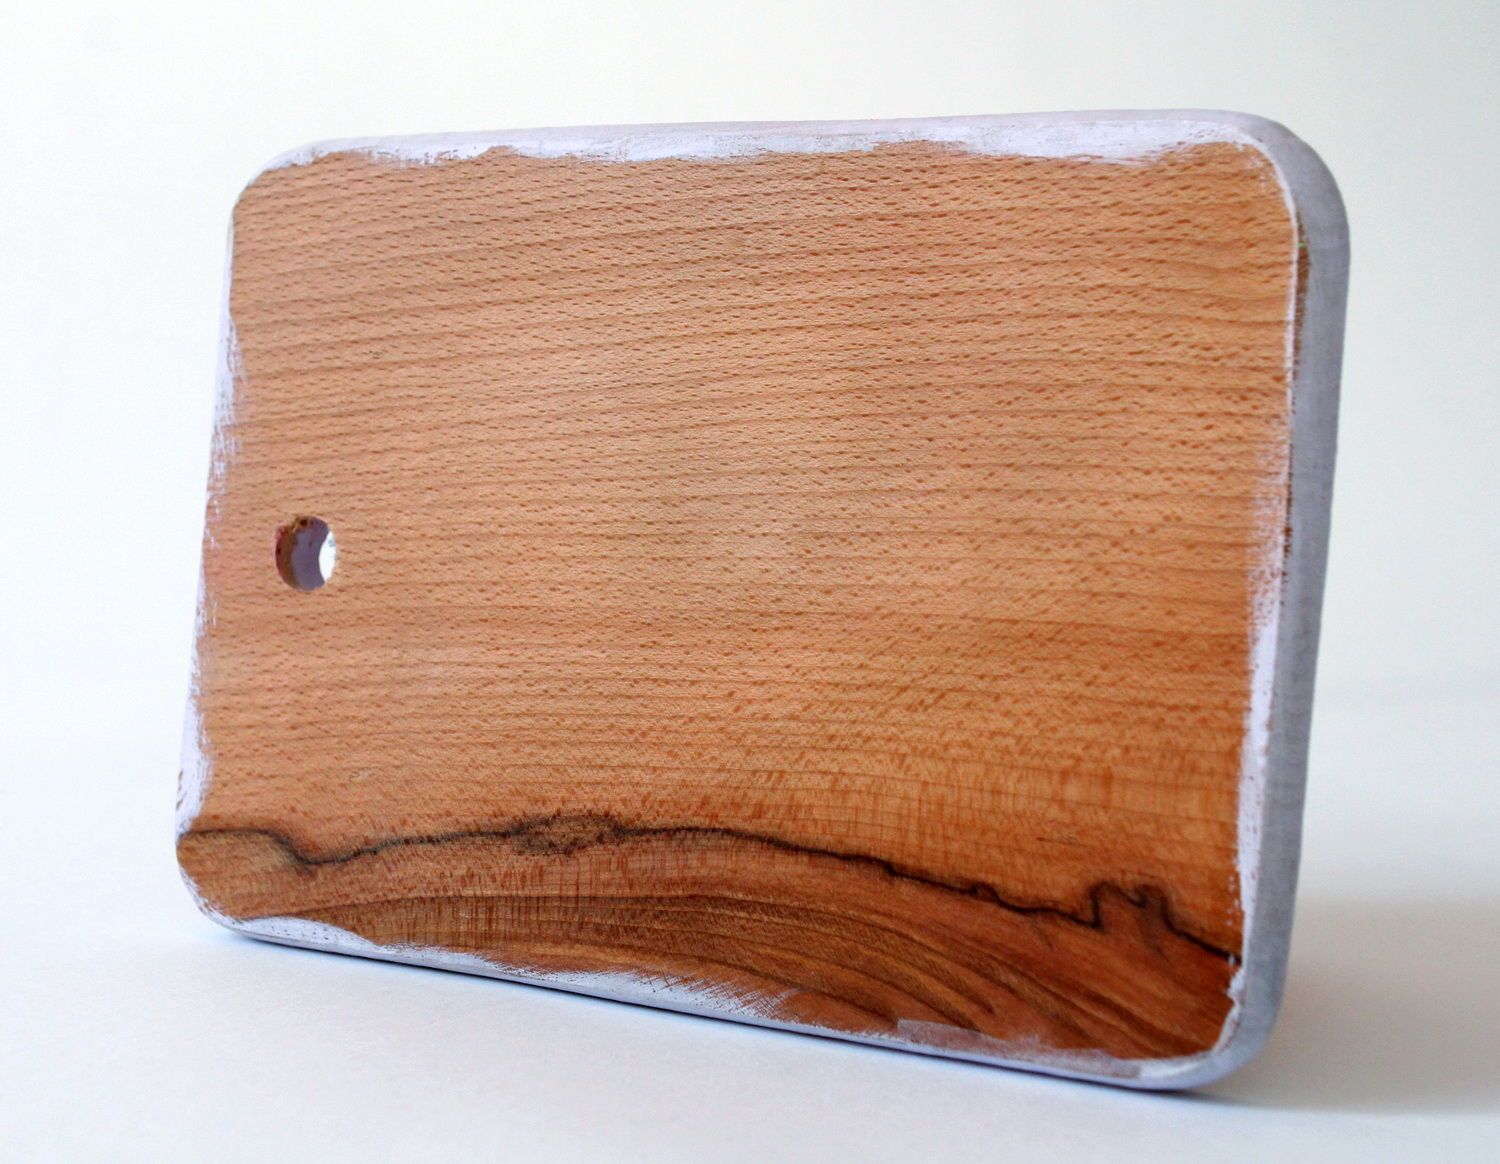 Planche à découper en bois du style Provence serviettage photo 2